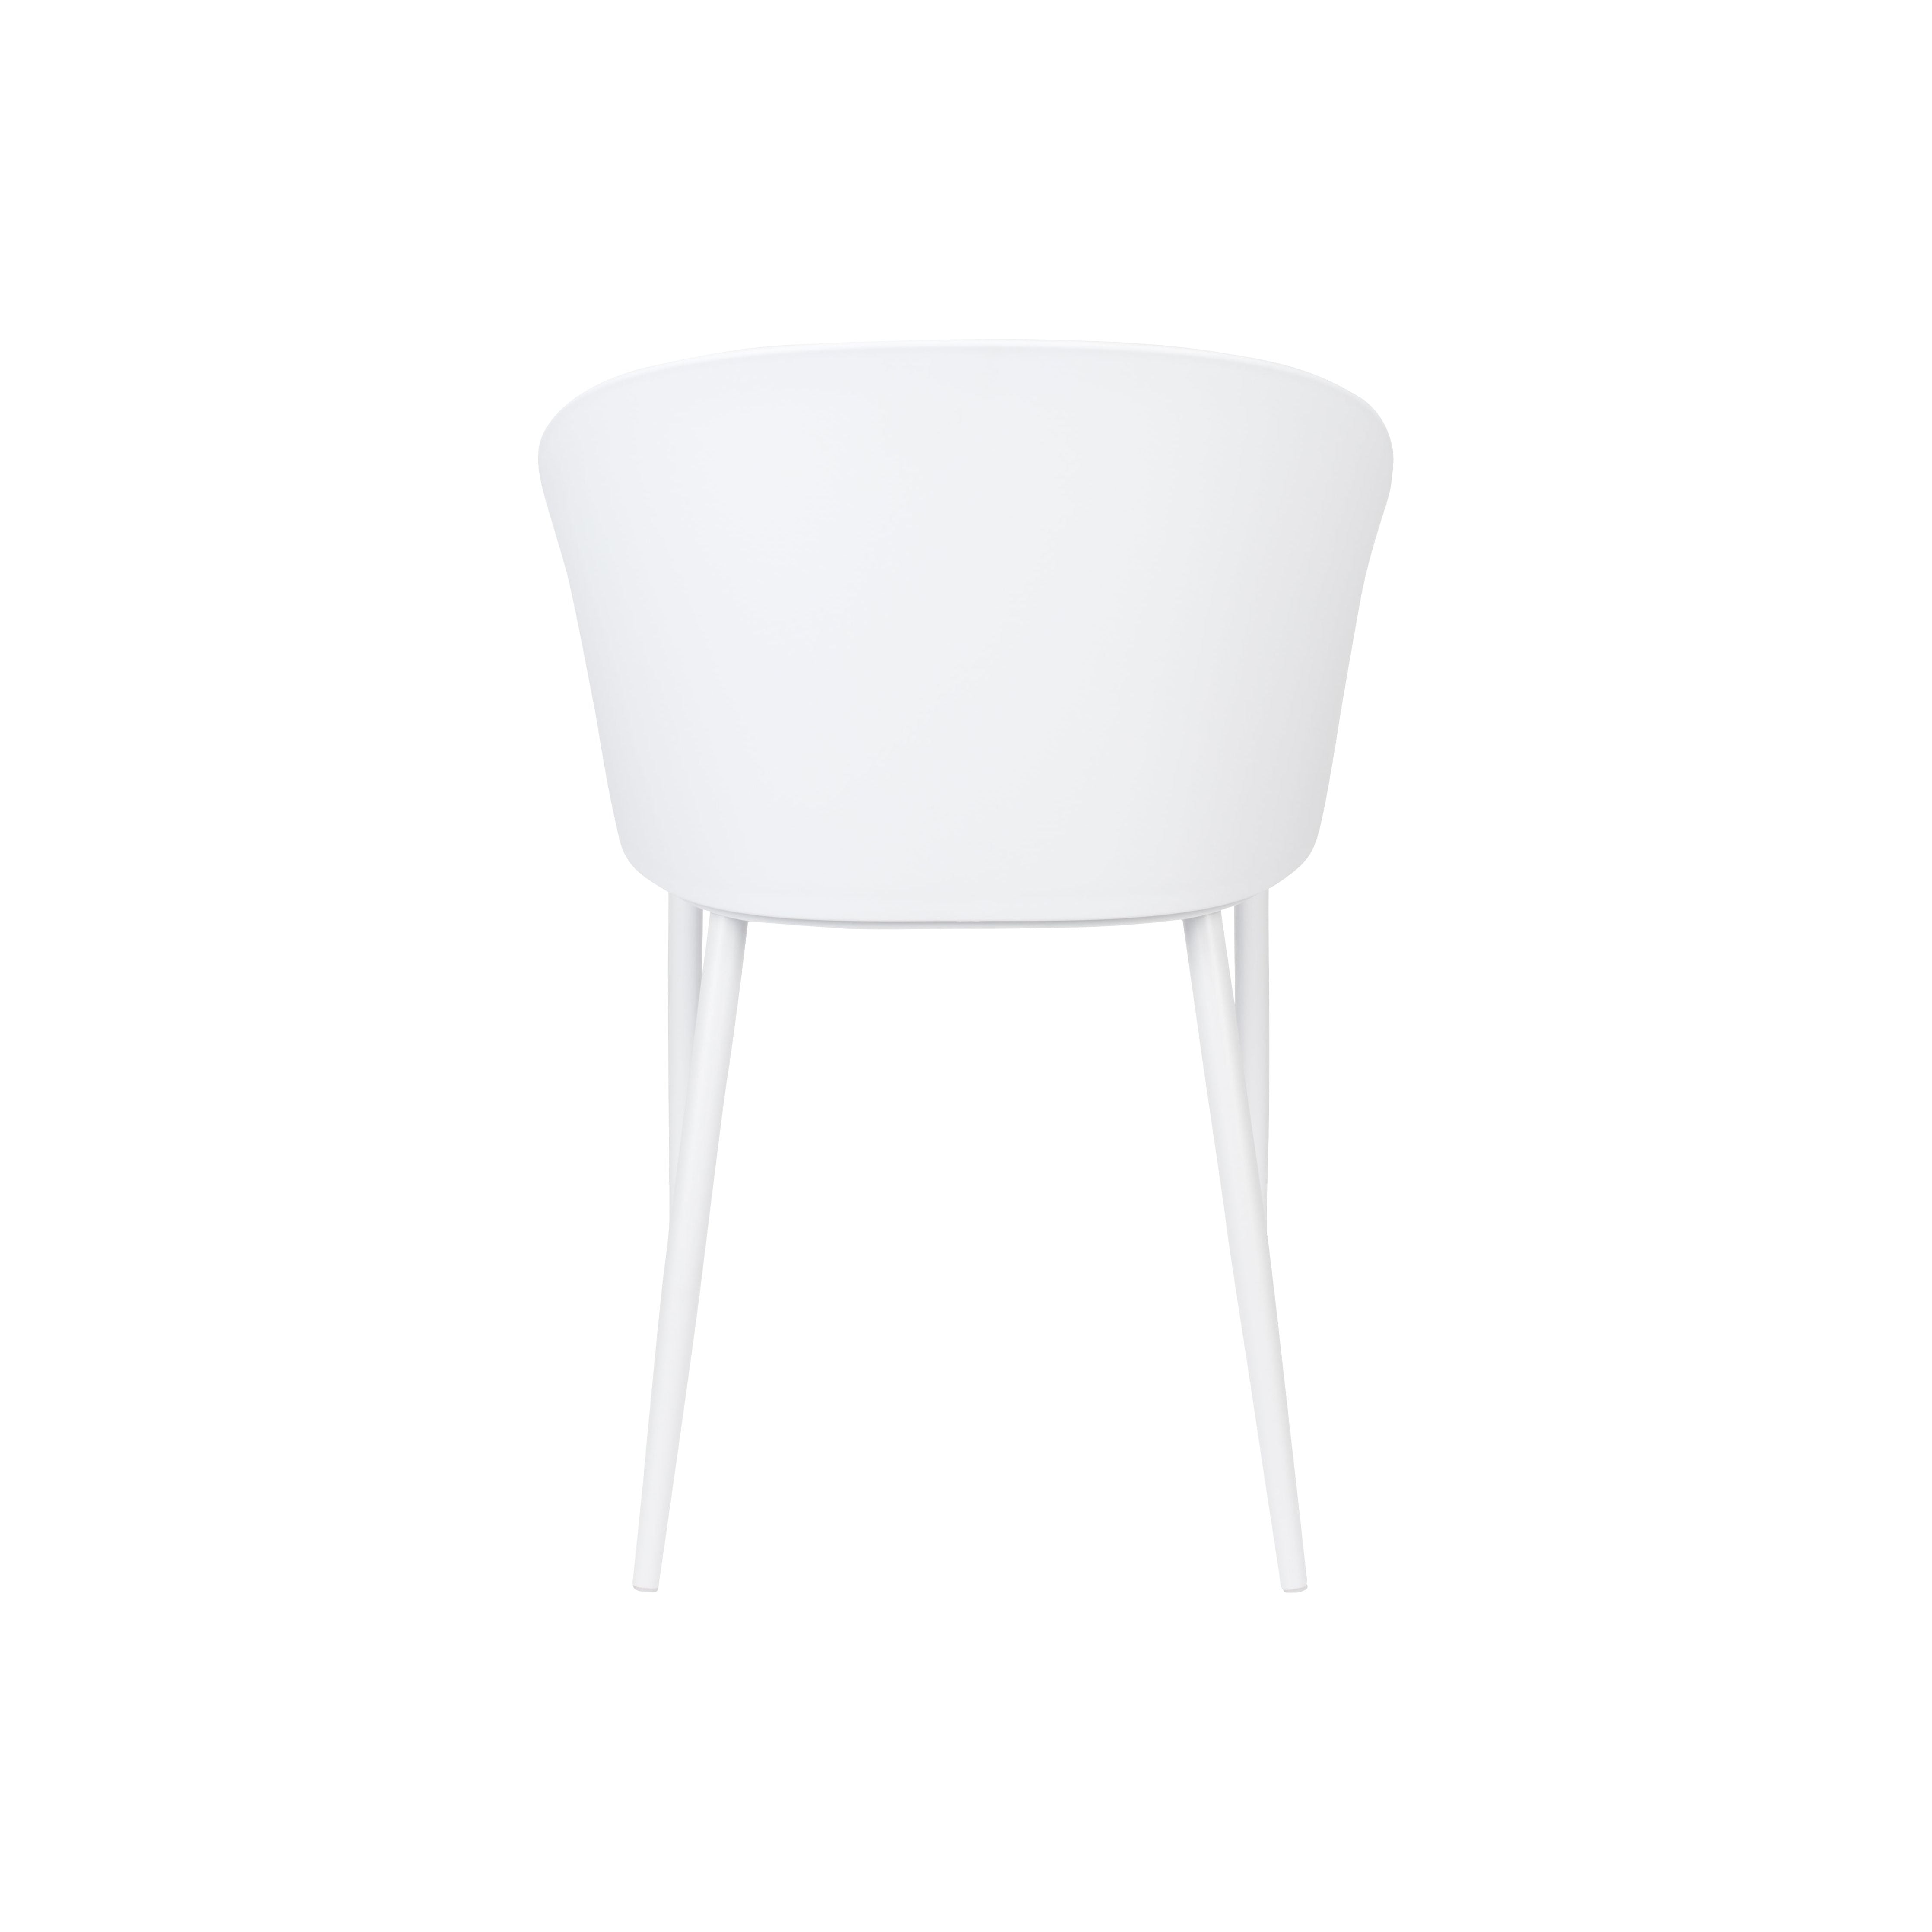 Chair gigi all white